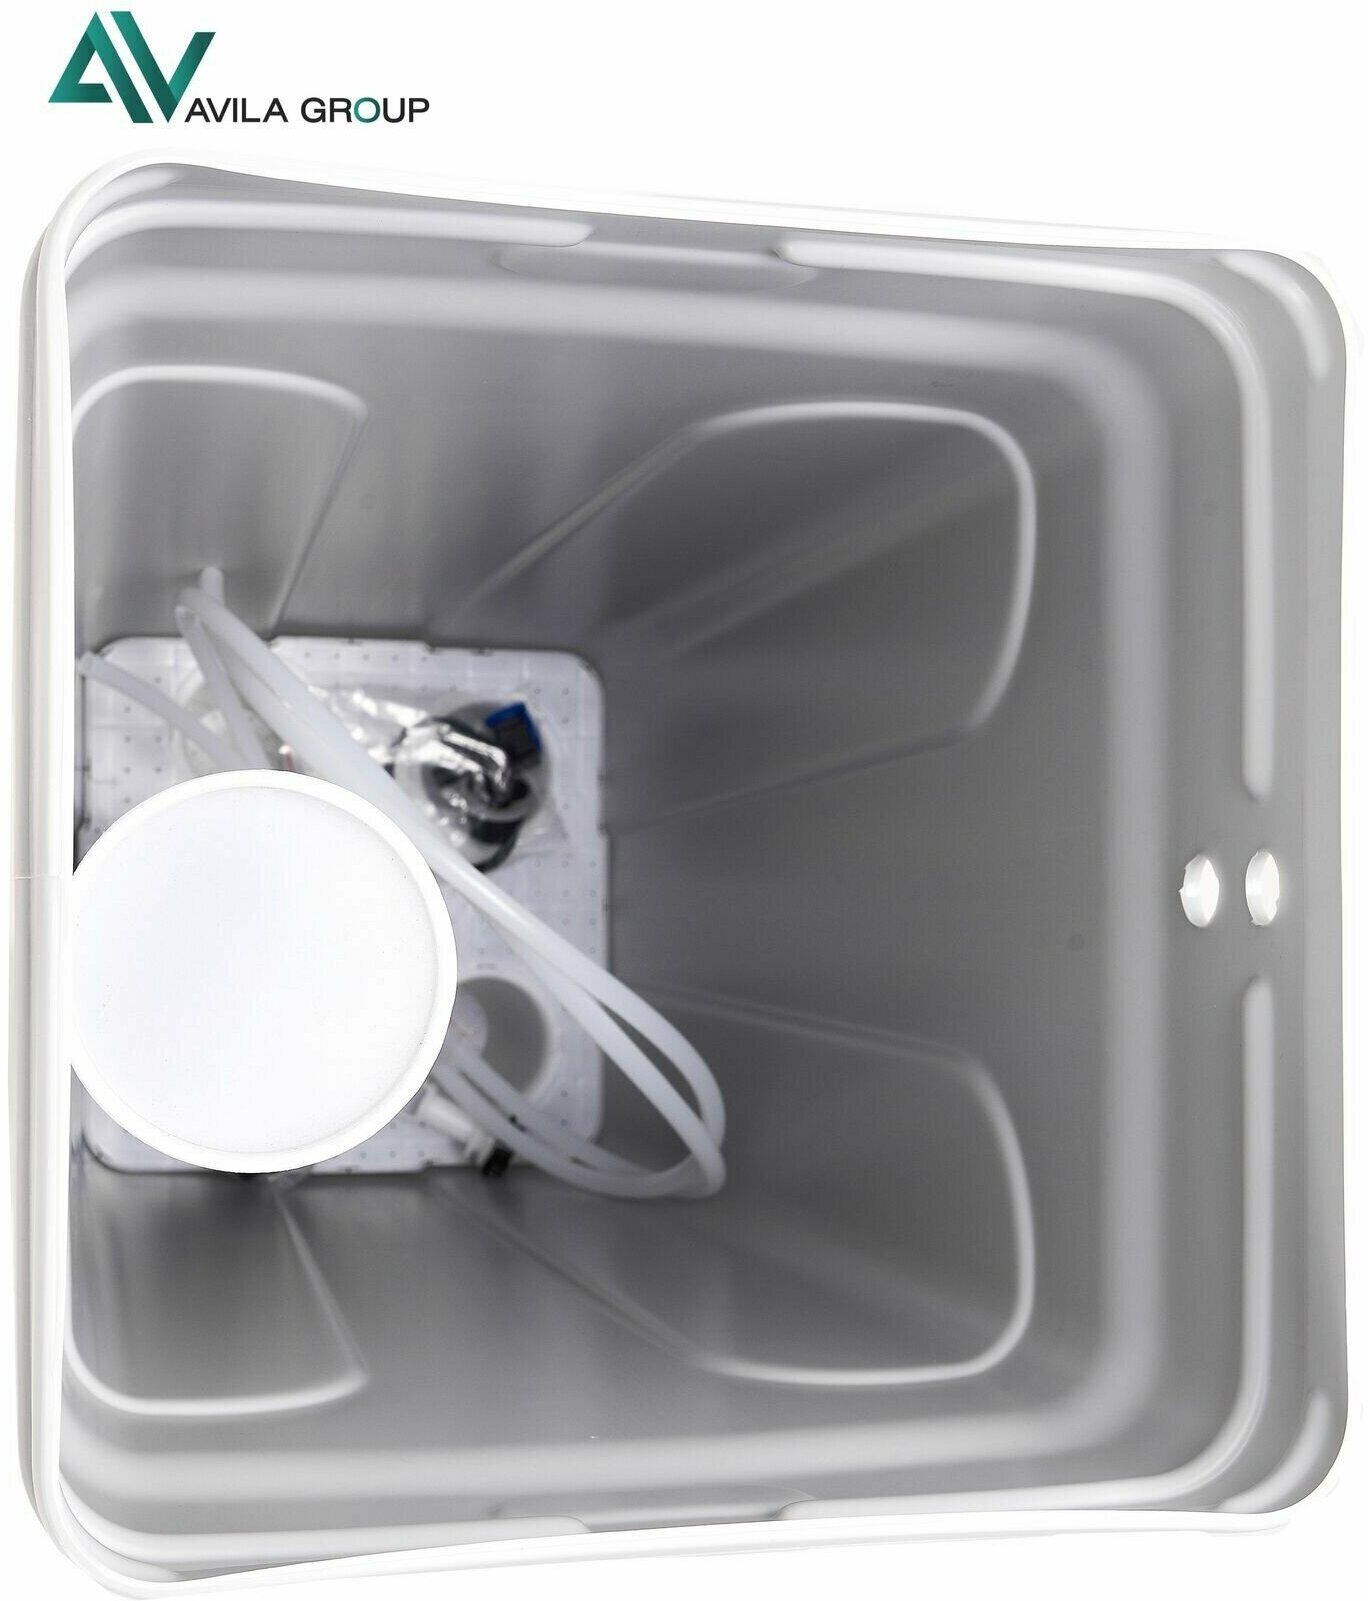 Система очистки воды из скважины Water-Pro AV 1252 RunXin F117Q3 под загрузку 1800 л/ч, фильтр колонного типа, умягчитель воды для дома, 14.5 кг - фотография № 12